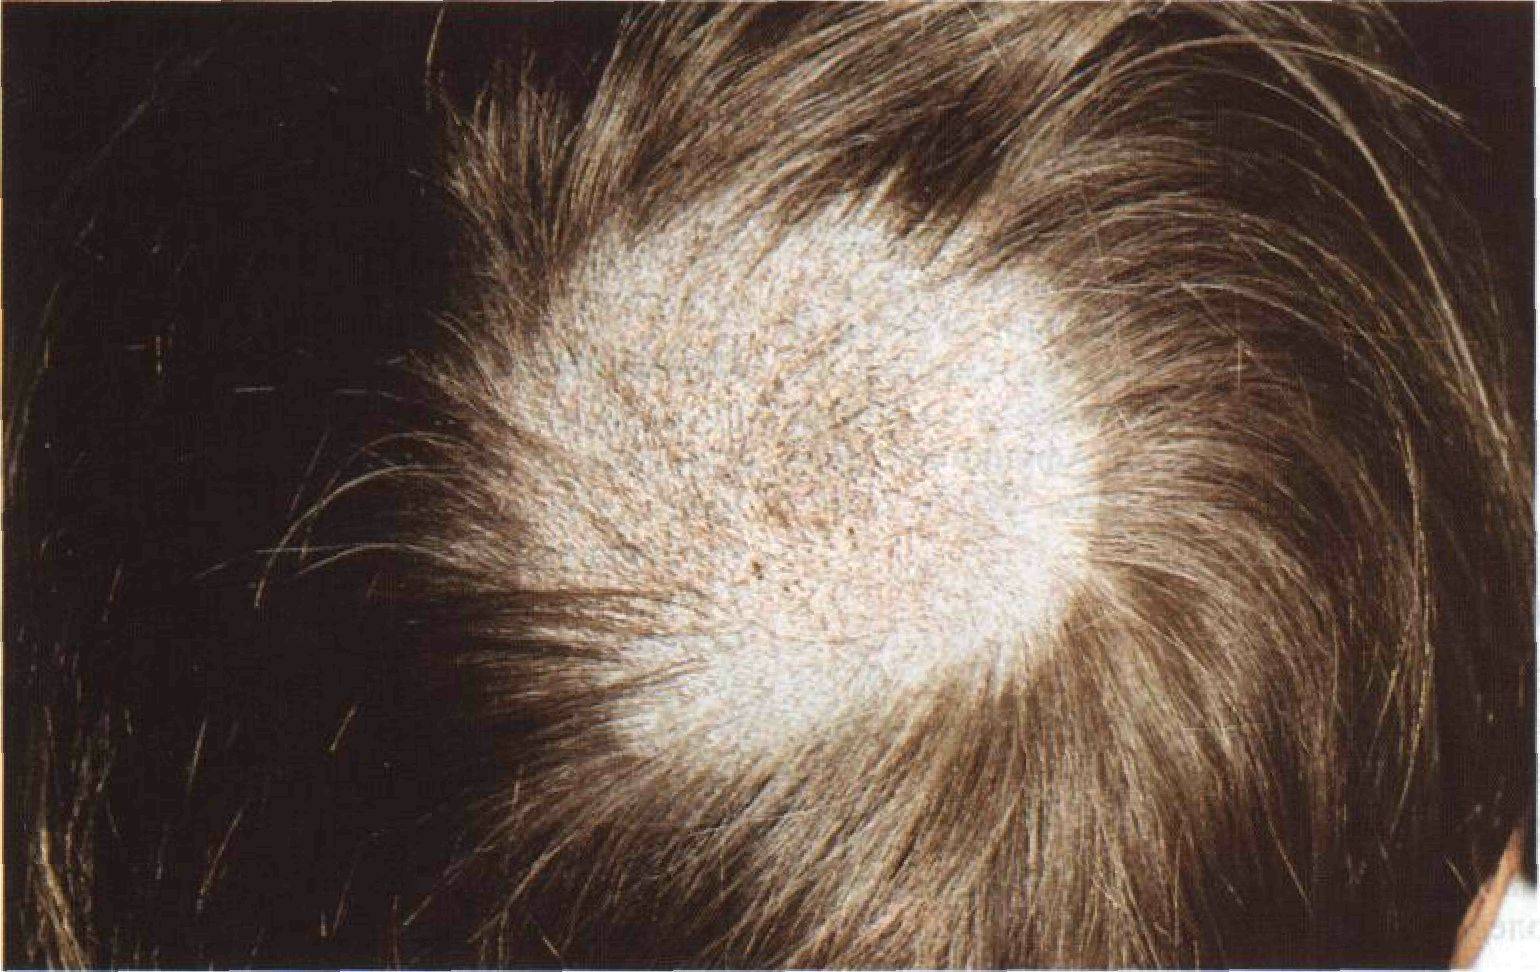 псориаз волосистой части головы фото